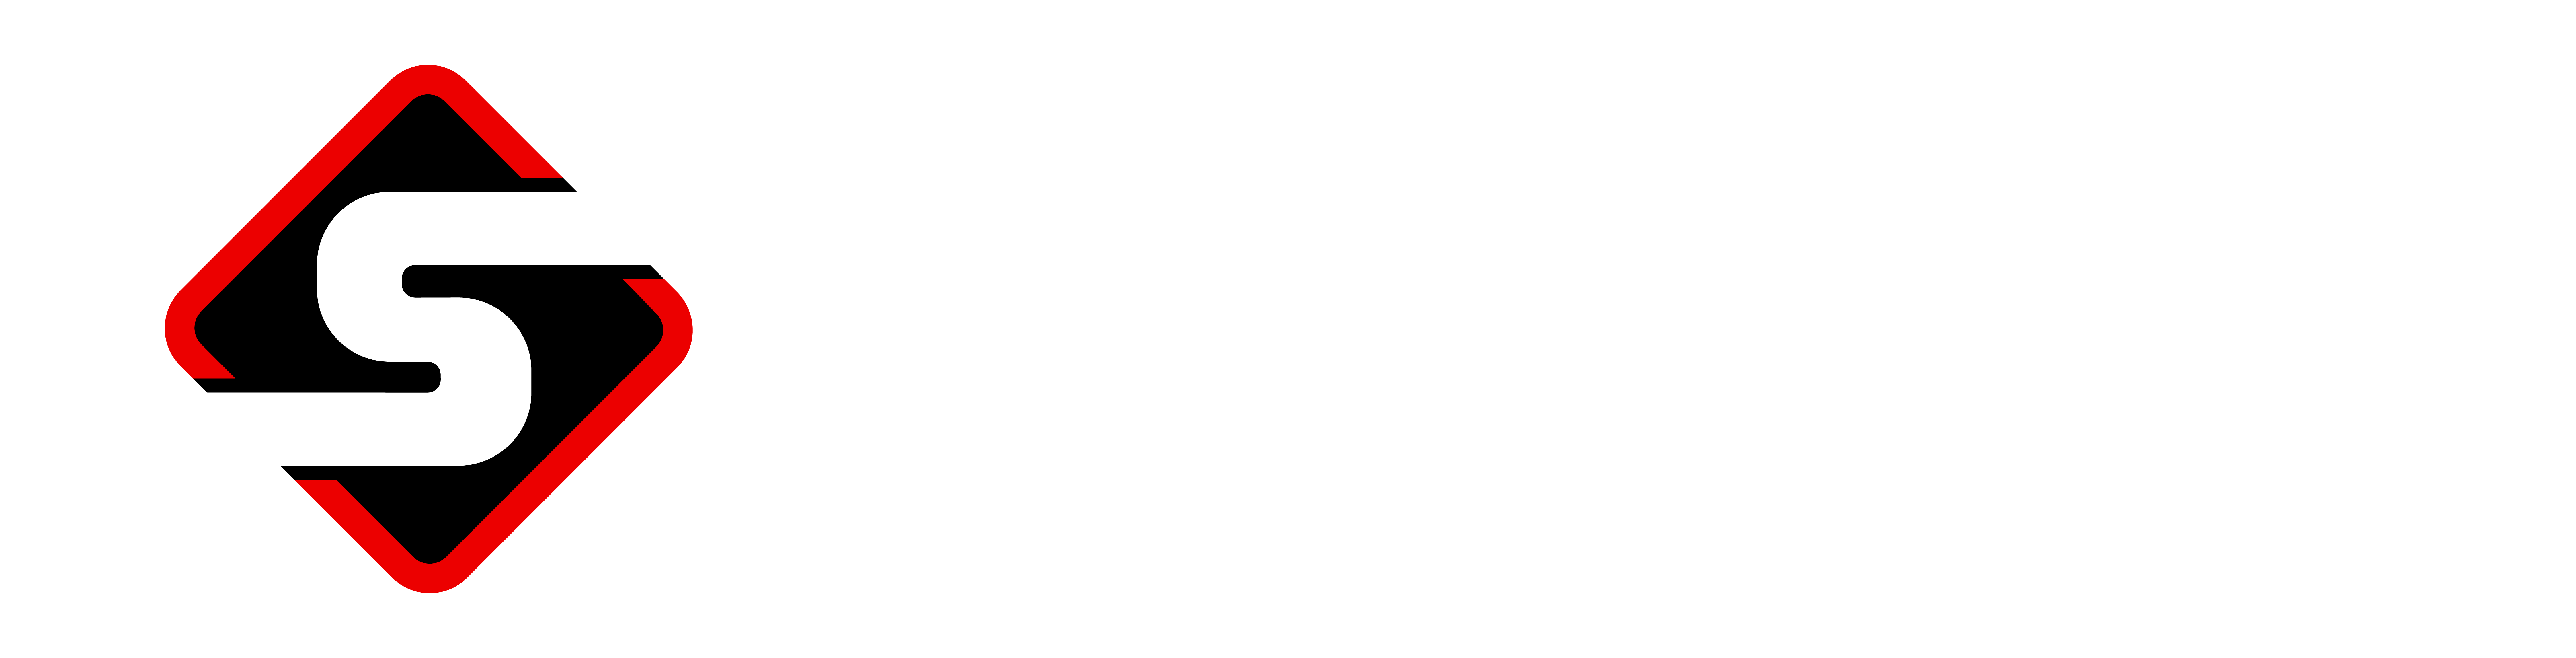 Sinacola-logo-white